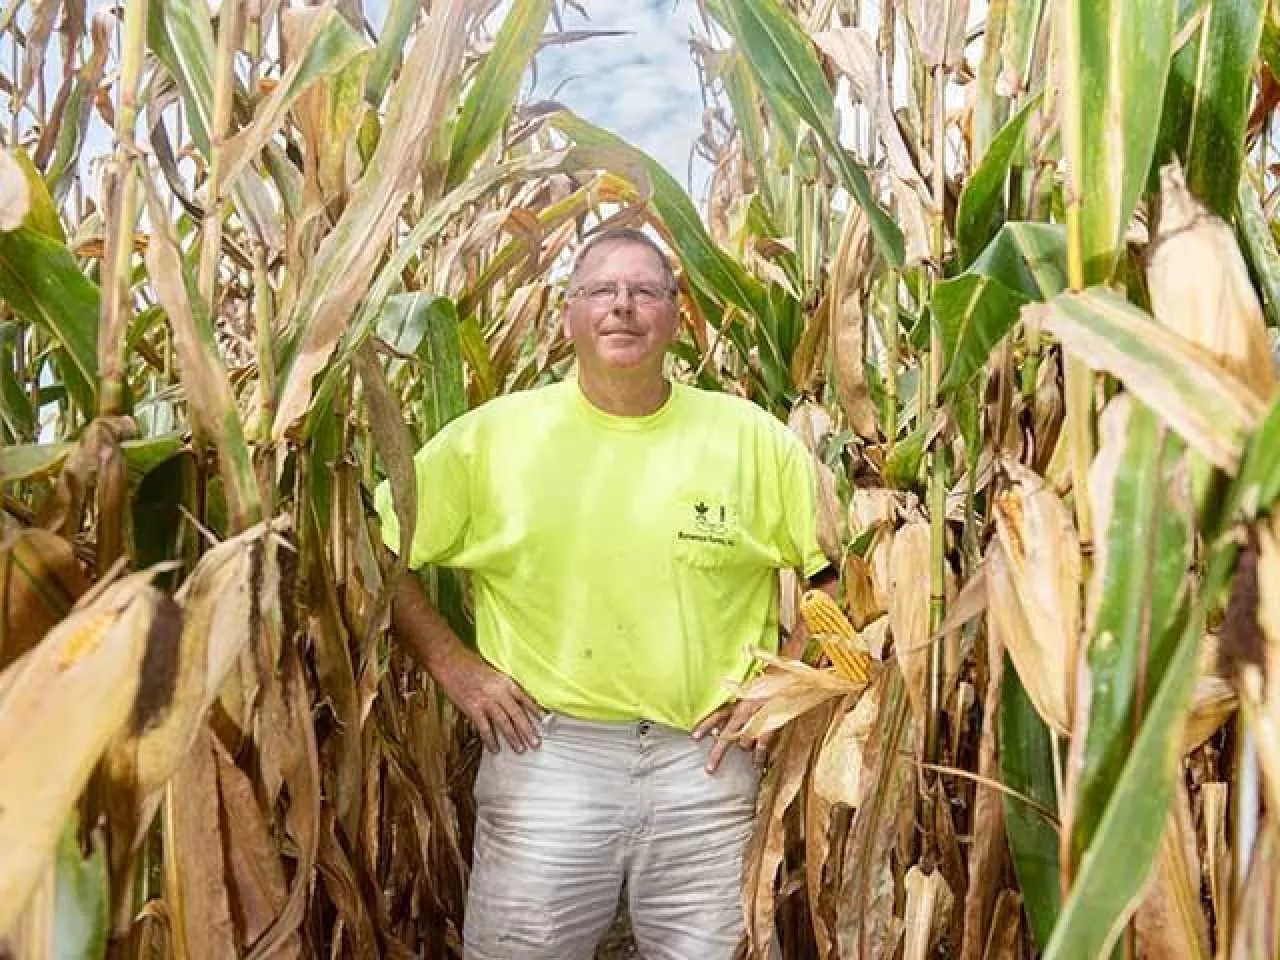 &lt;p&gt;David Hula, mieszkaniec Charles City w stanie Wirginia ciągle poprawia światowe rekordy plonowania kukurydzy. W 2019 r. dokonał tego po raz czwarty pokonując pułap 600 buszli z akra. Hodowcy i rekordzista twierdzą, że potencjał plonowania obecnych mieszańców kukurydzy oscyluje na poziomie 800-850 buszli z akra, a to daje możliwość bicia kolejnych rekordów&lt;/p&gt;